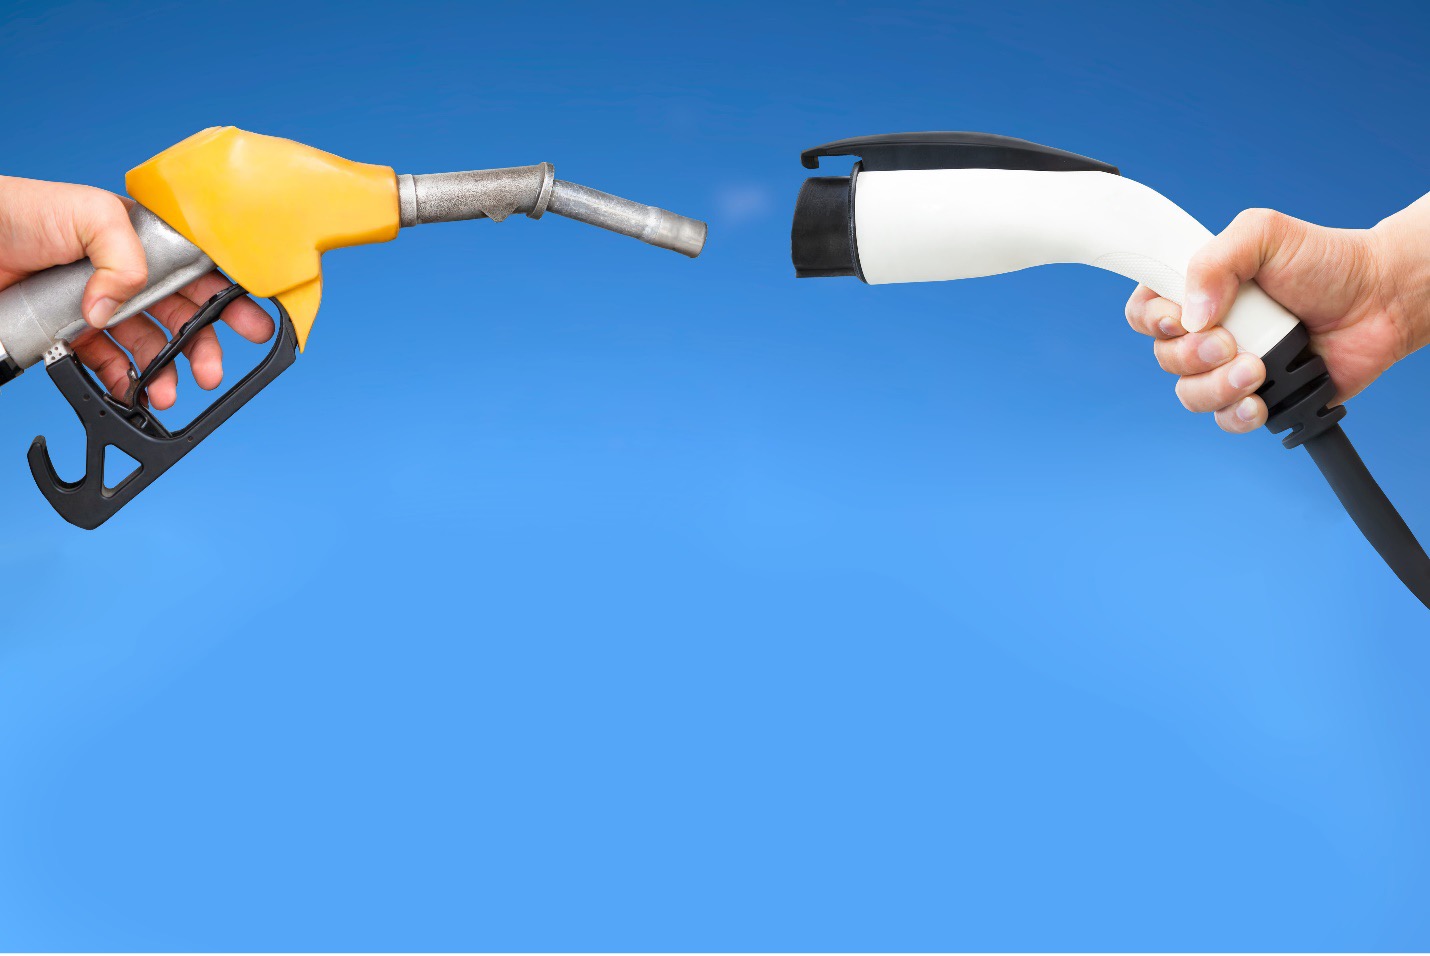 تصویر شارژر خودروی برقی و نازل بنزین در مقاله مقایسه خودروهای برقی و هیبریدی